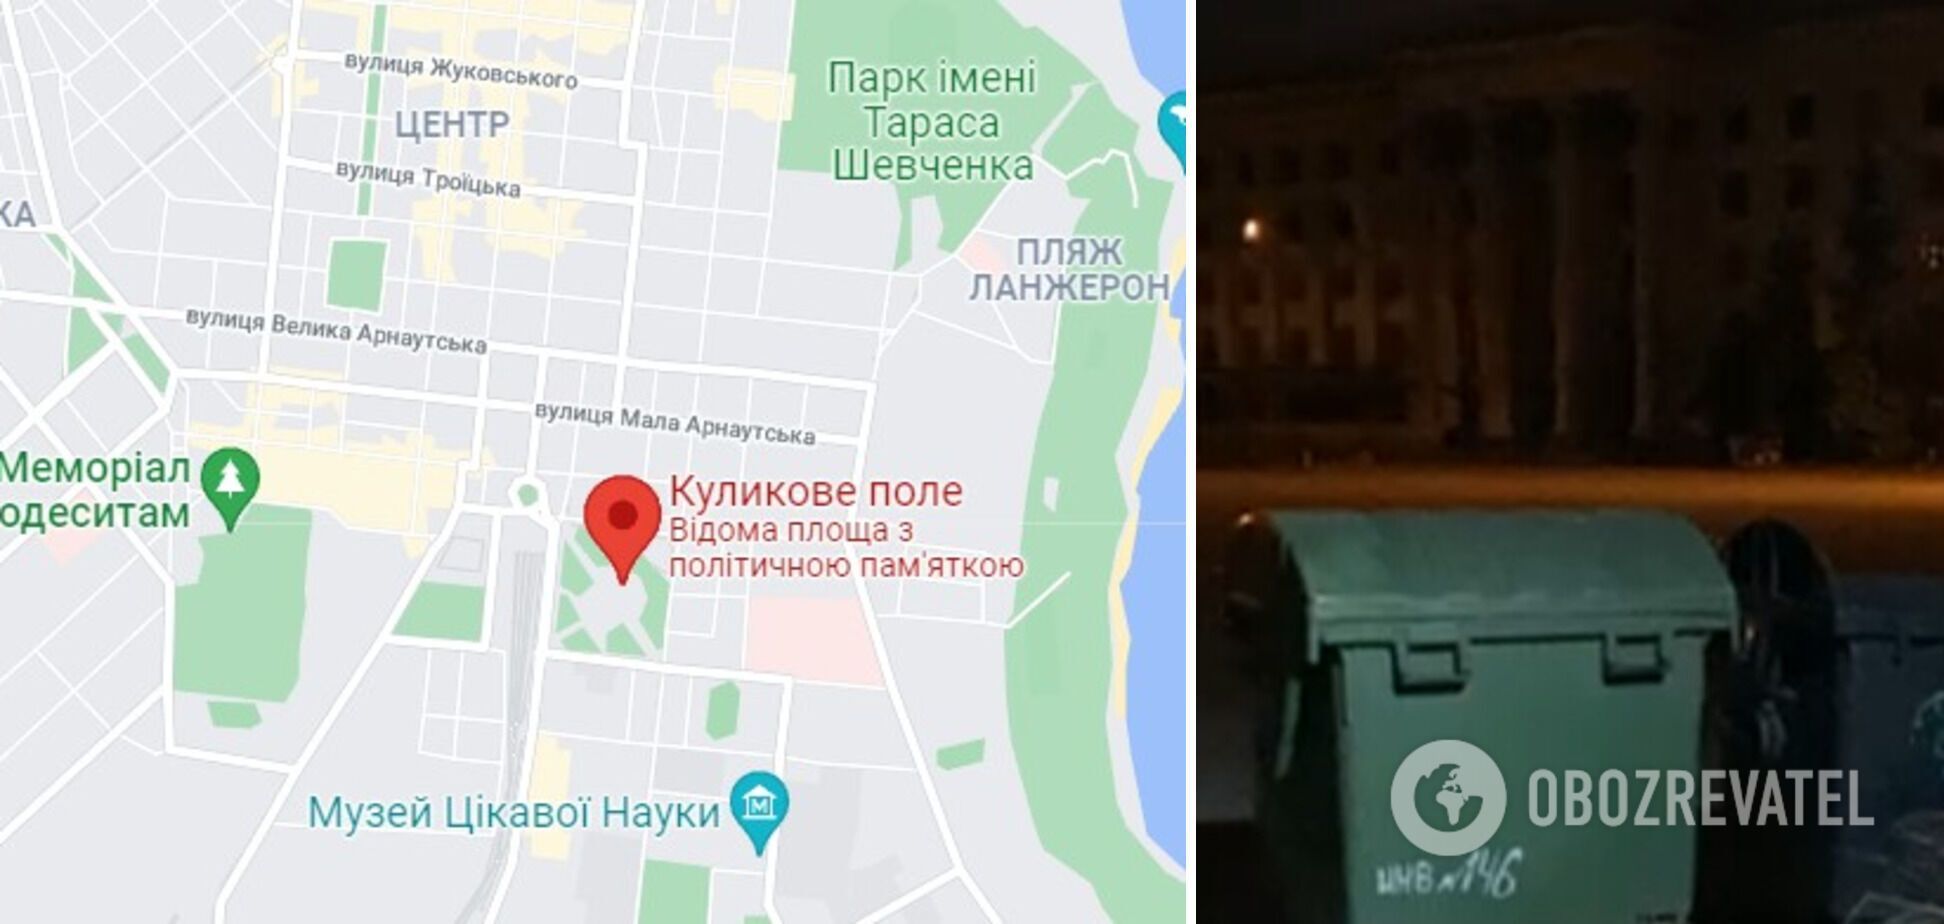 Інцидент трапився на площі Куликове поле в Одесі